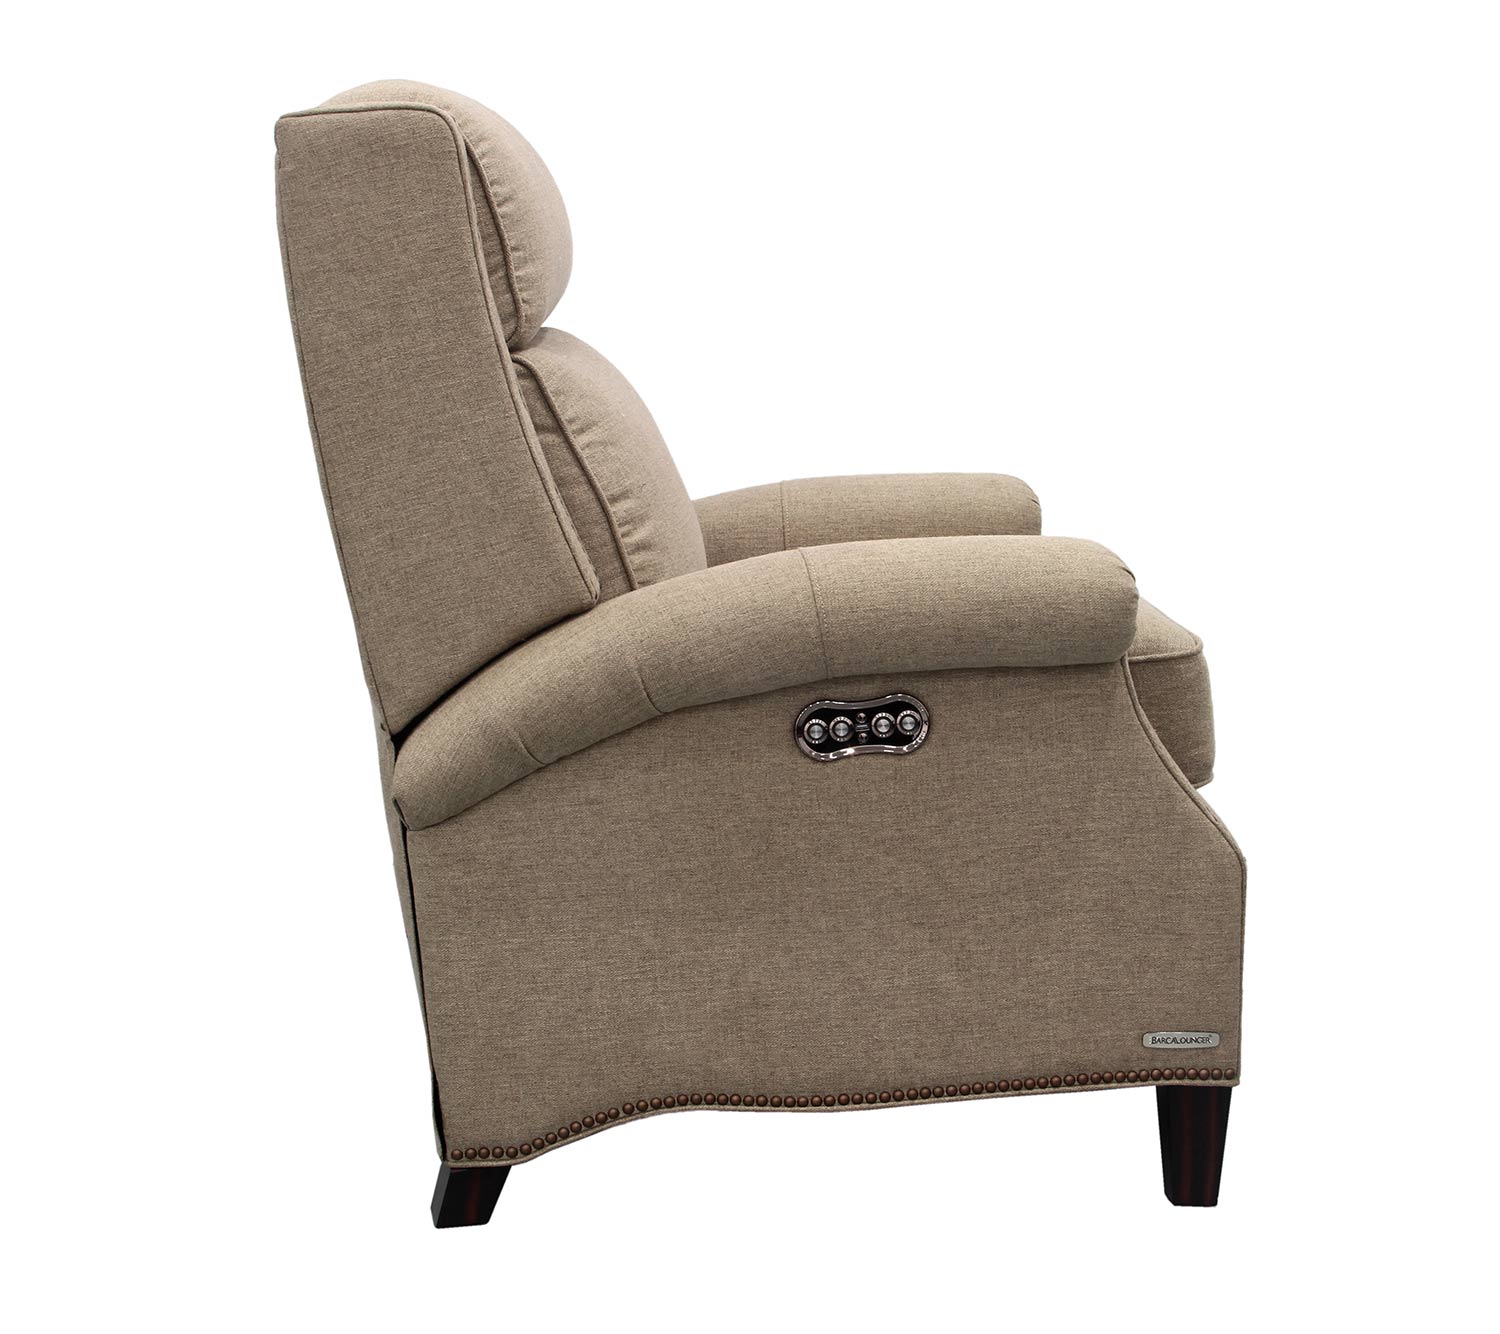 Barcalounger Barrett Power Recliner Chair with Power Headrest - Sisal/fabric